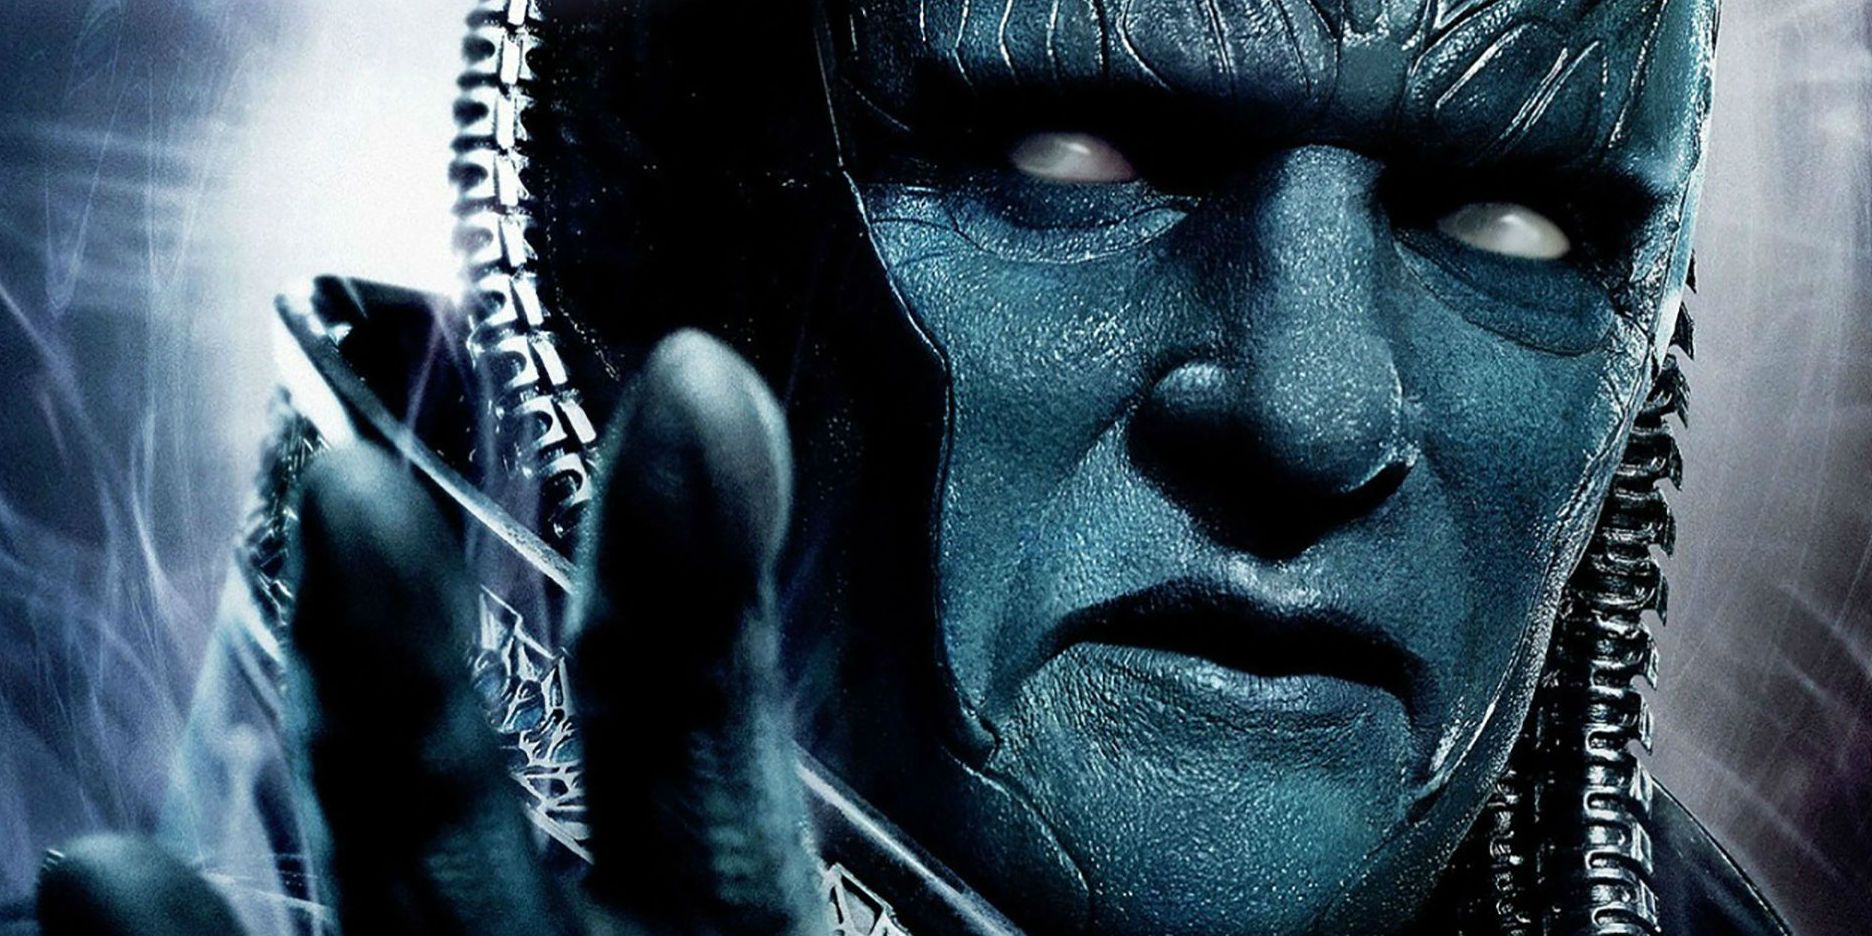 "Te convertiré en algo más": Apocalypse Cosplay trata al villano de X-Men como el Dios oscuro que es